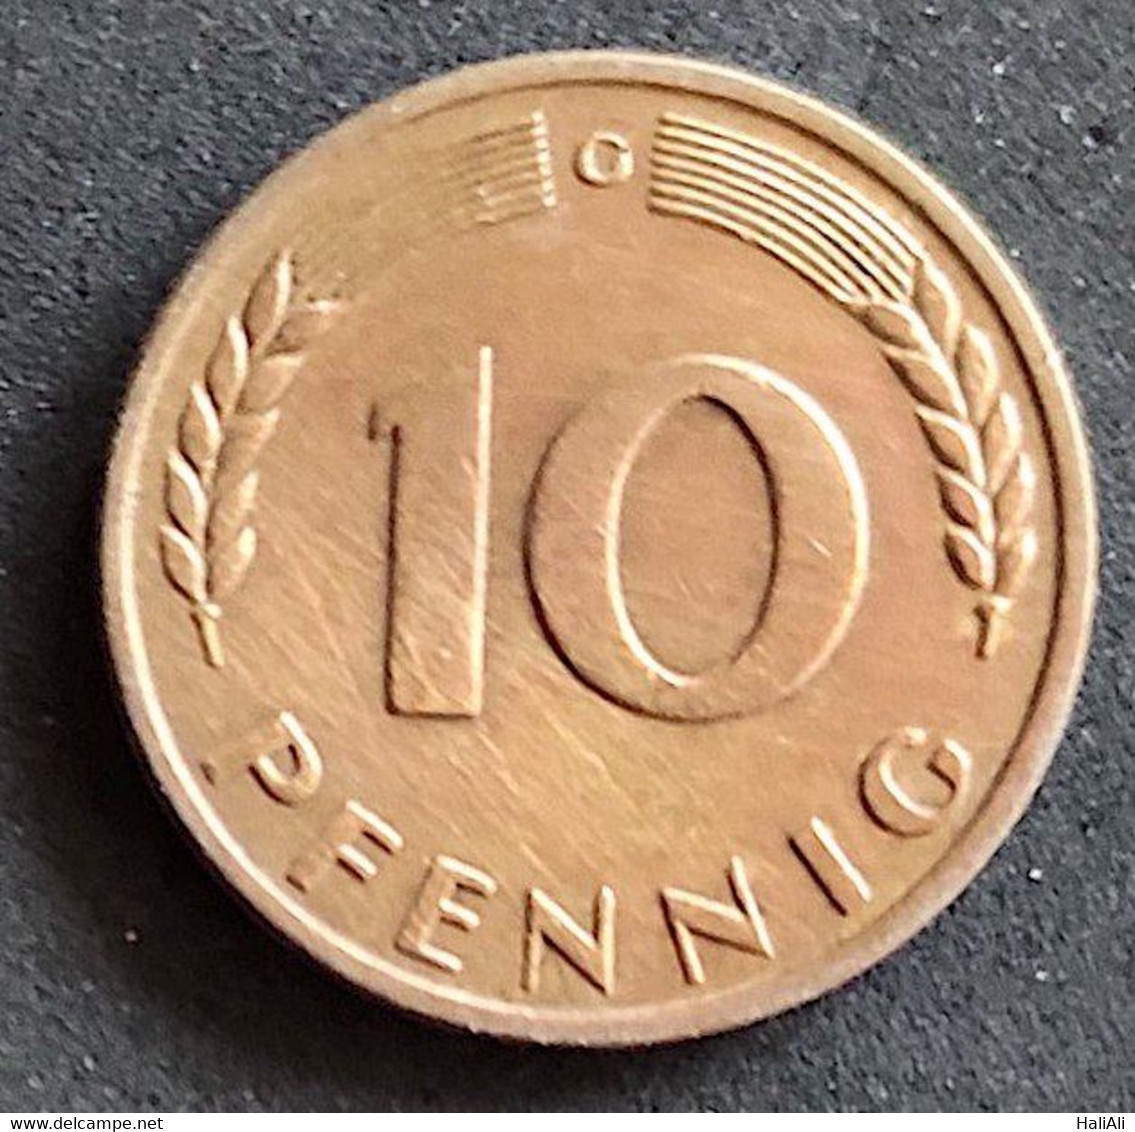 Coin Germany Moeda Alemanha 1950 10 Pfennig G 1 - 10 Pfennig